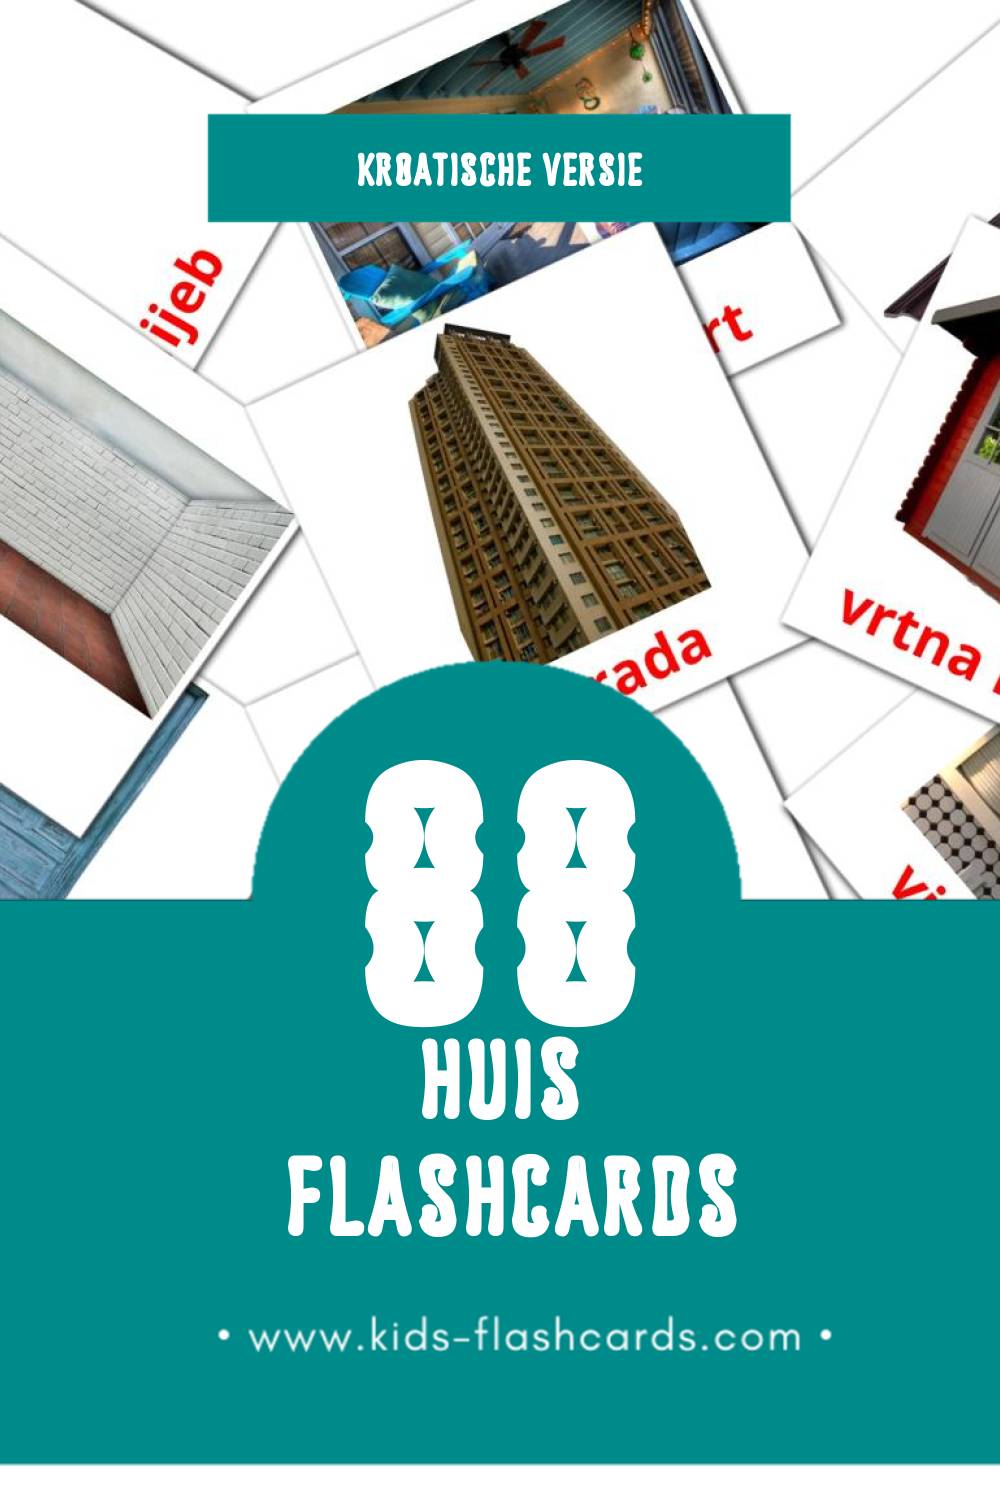 Visuele Kuća Flashcards voor Kleuters (88 kaarten in het Kroatisch)